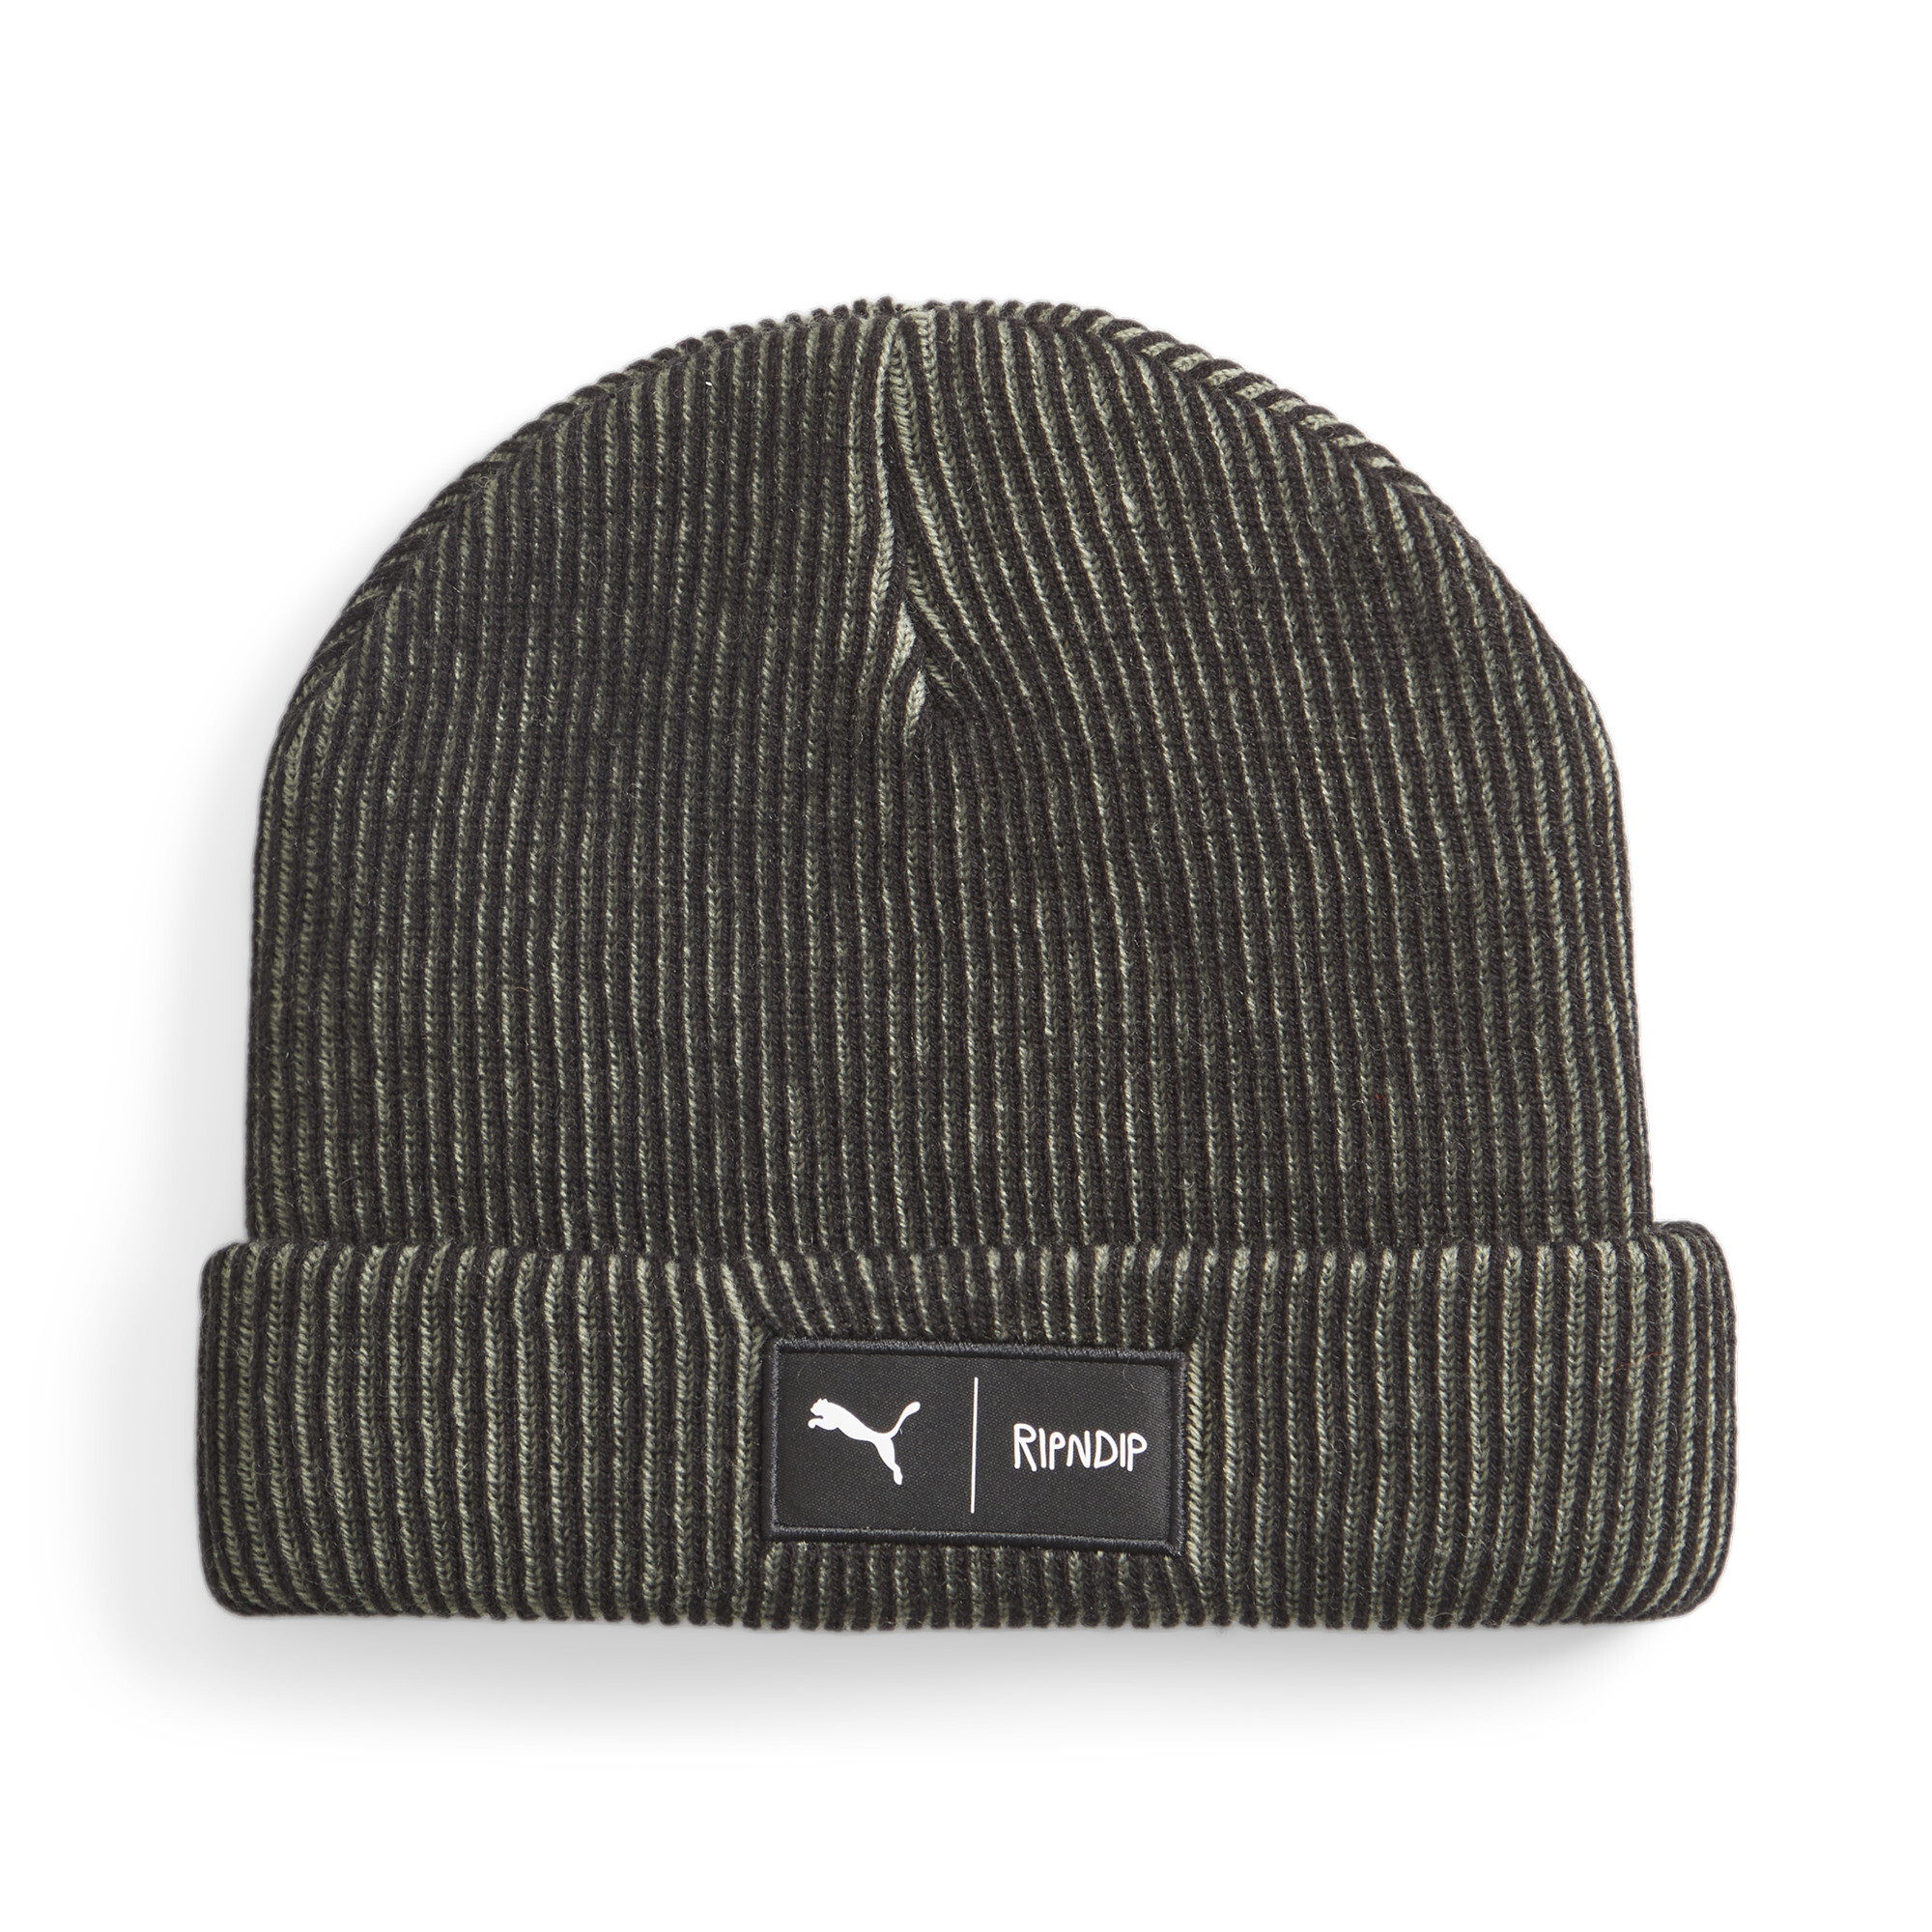 Puma X RIPNDIP Beanie Hat, Black, Size Adult, Accessories